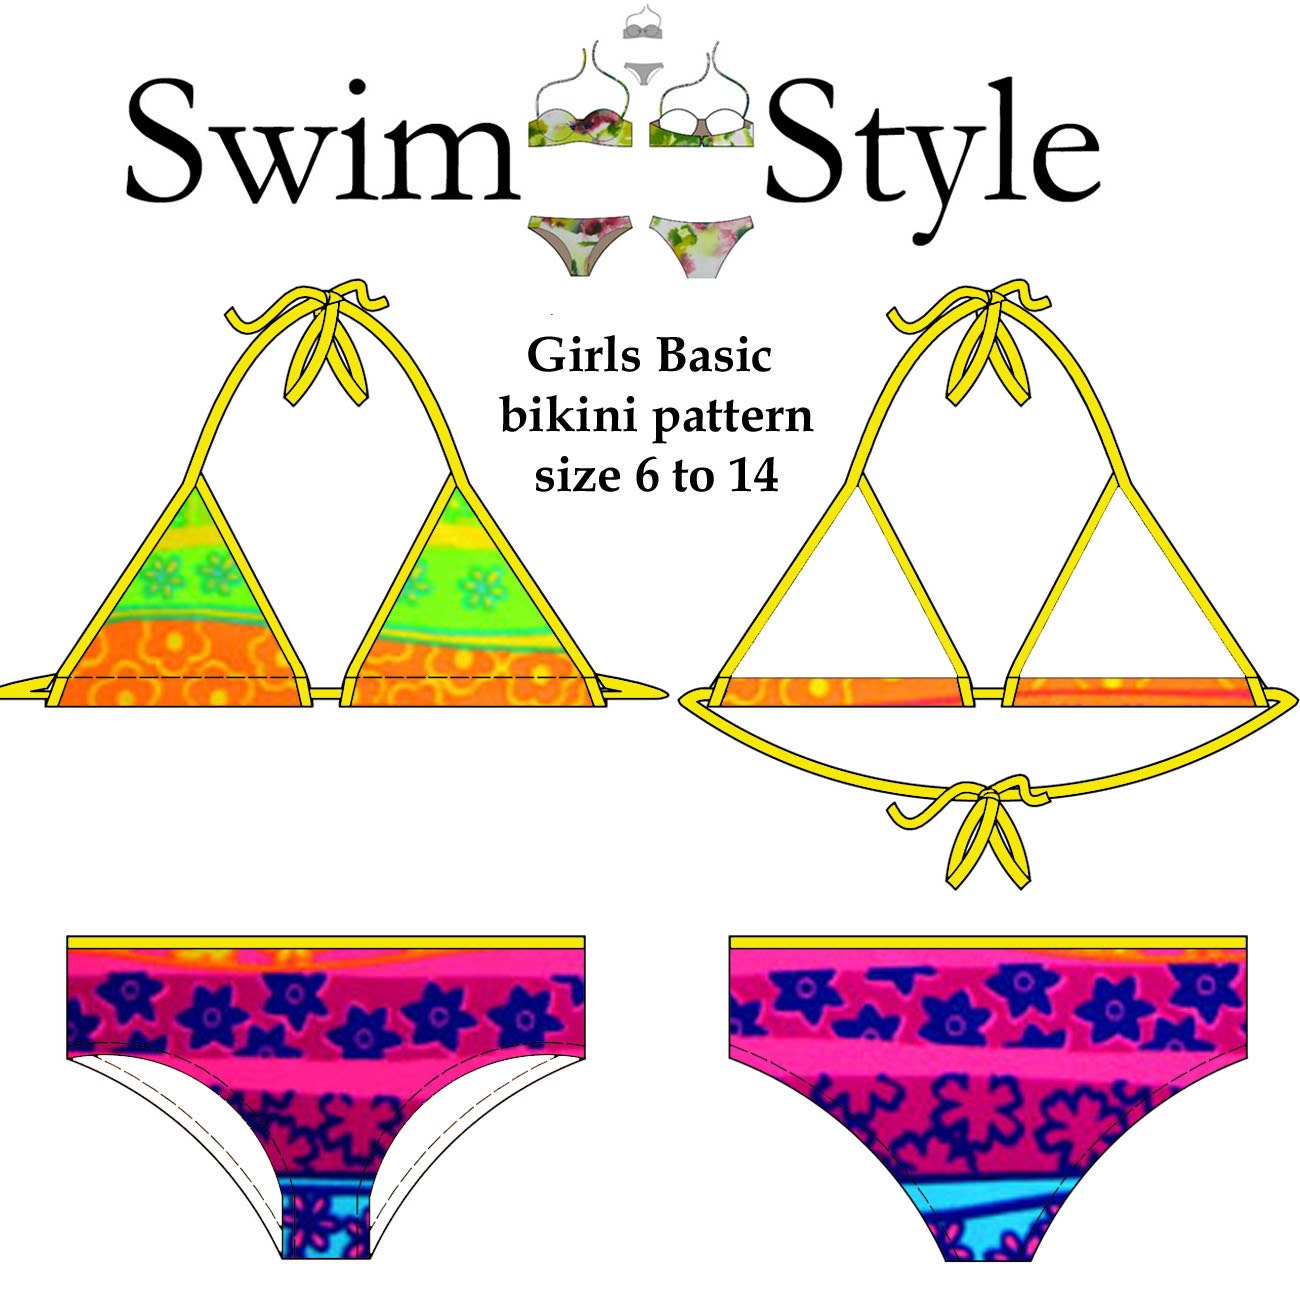 Girls Basic bikini pdf pattern size 6 to 14 by Swimstylepatterns